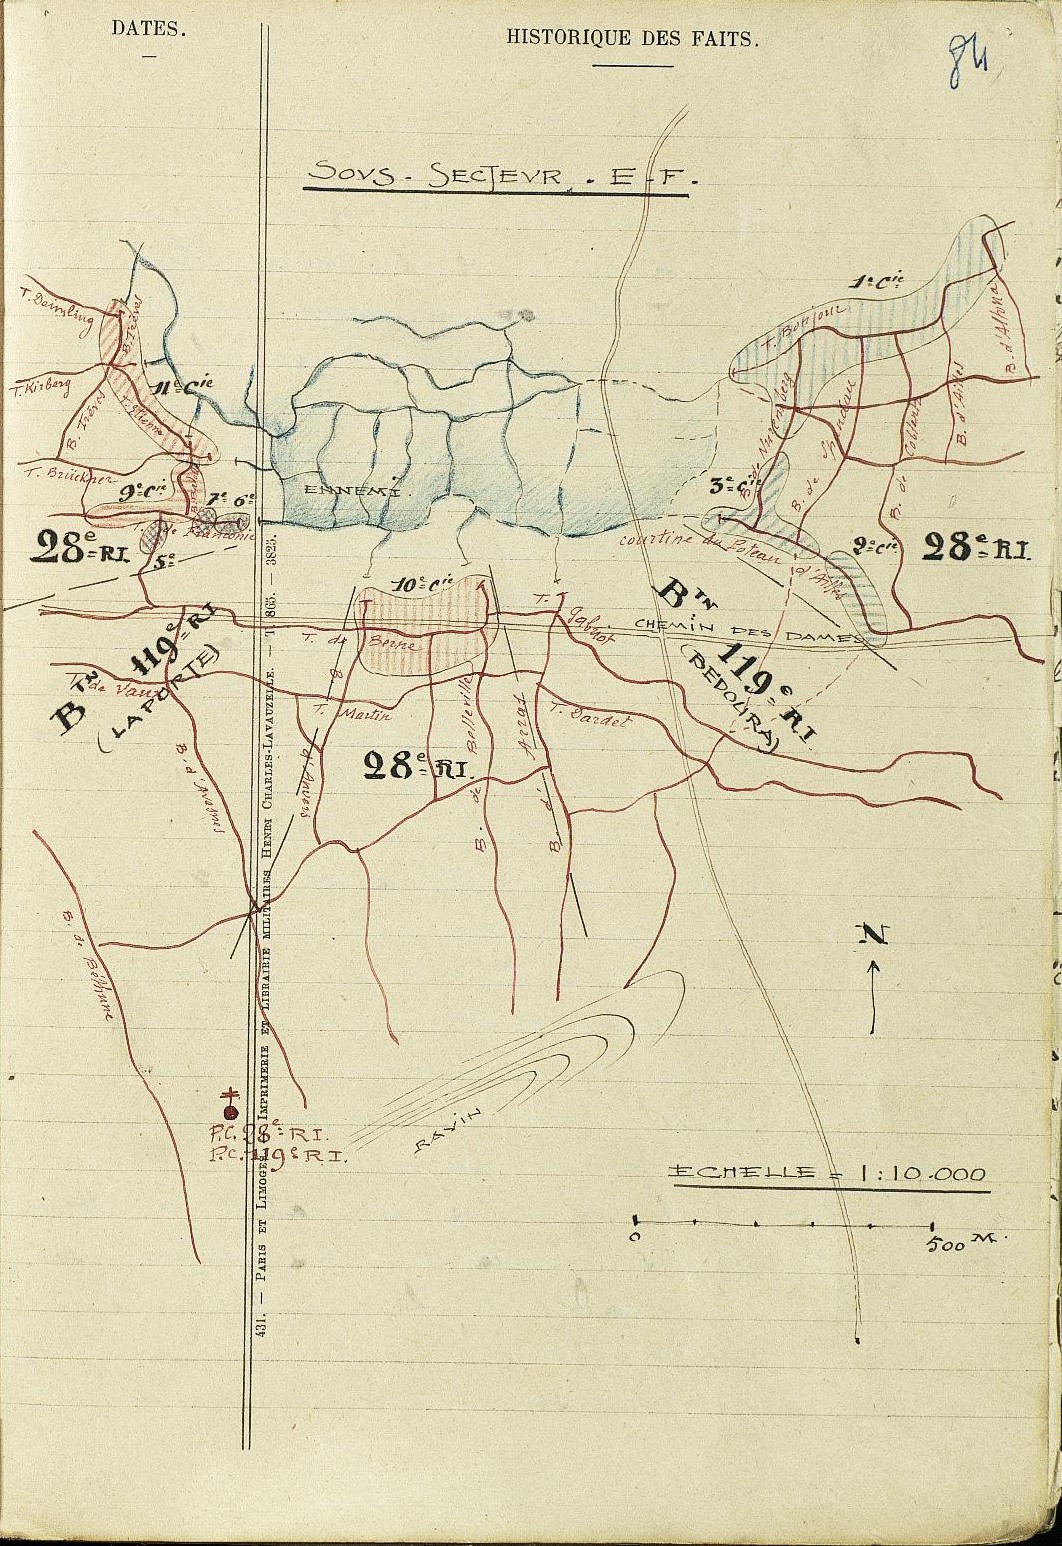 Cerny - Ailles - positions du 28e régiment d'infanterie le 1 juillet 1917 